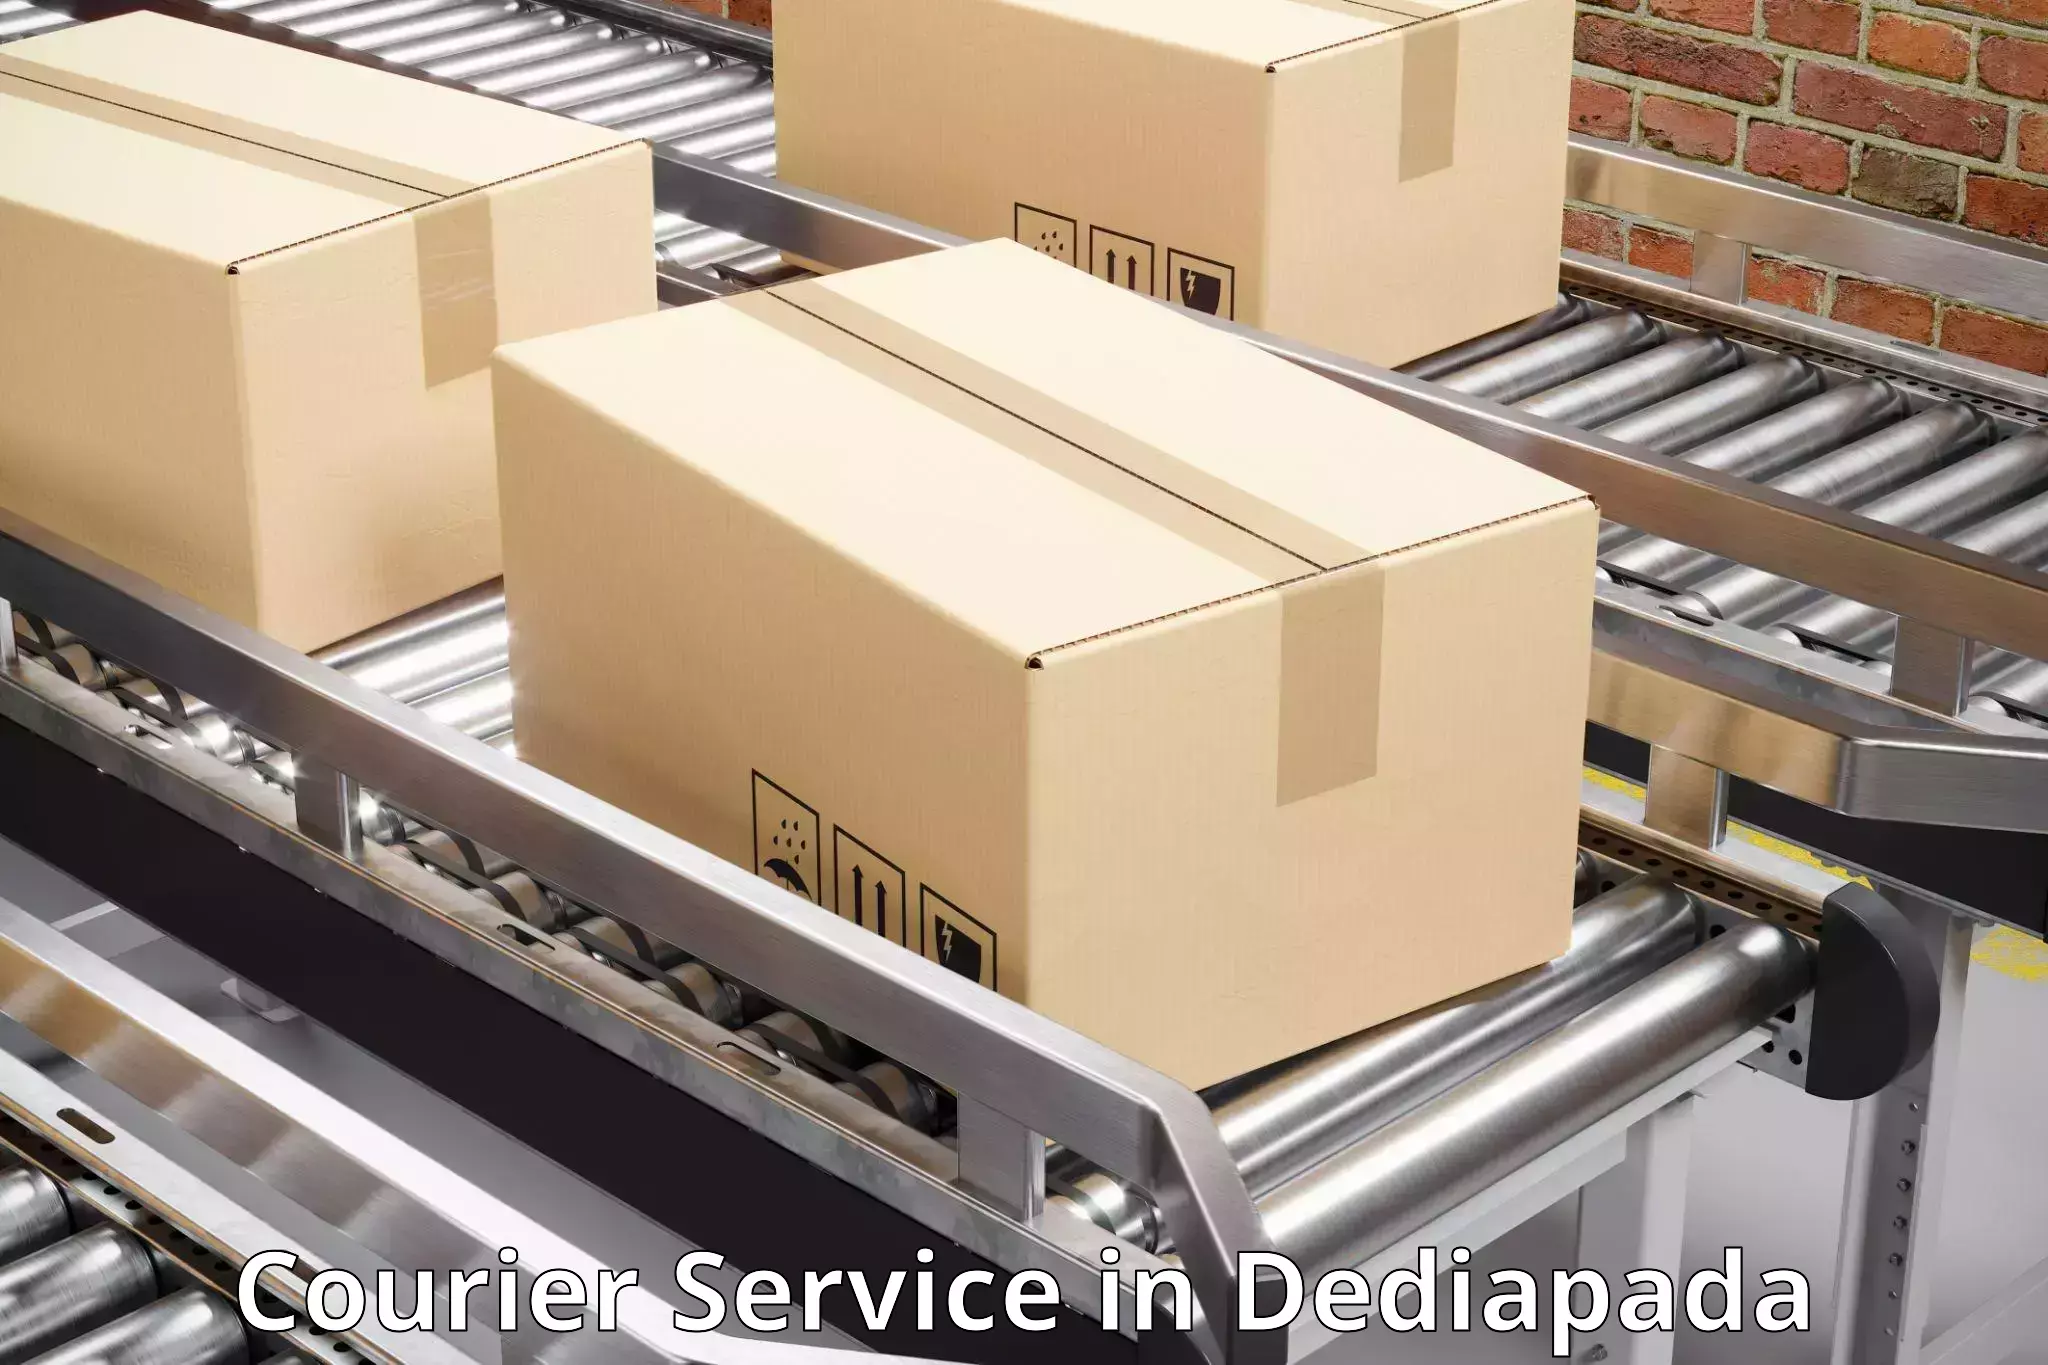 High-priority parcel service in Dediapada